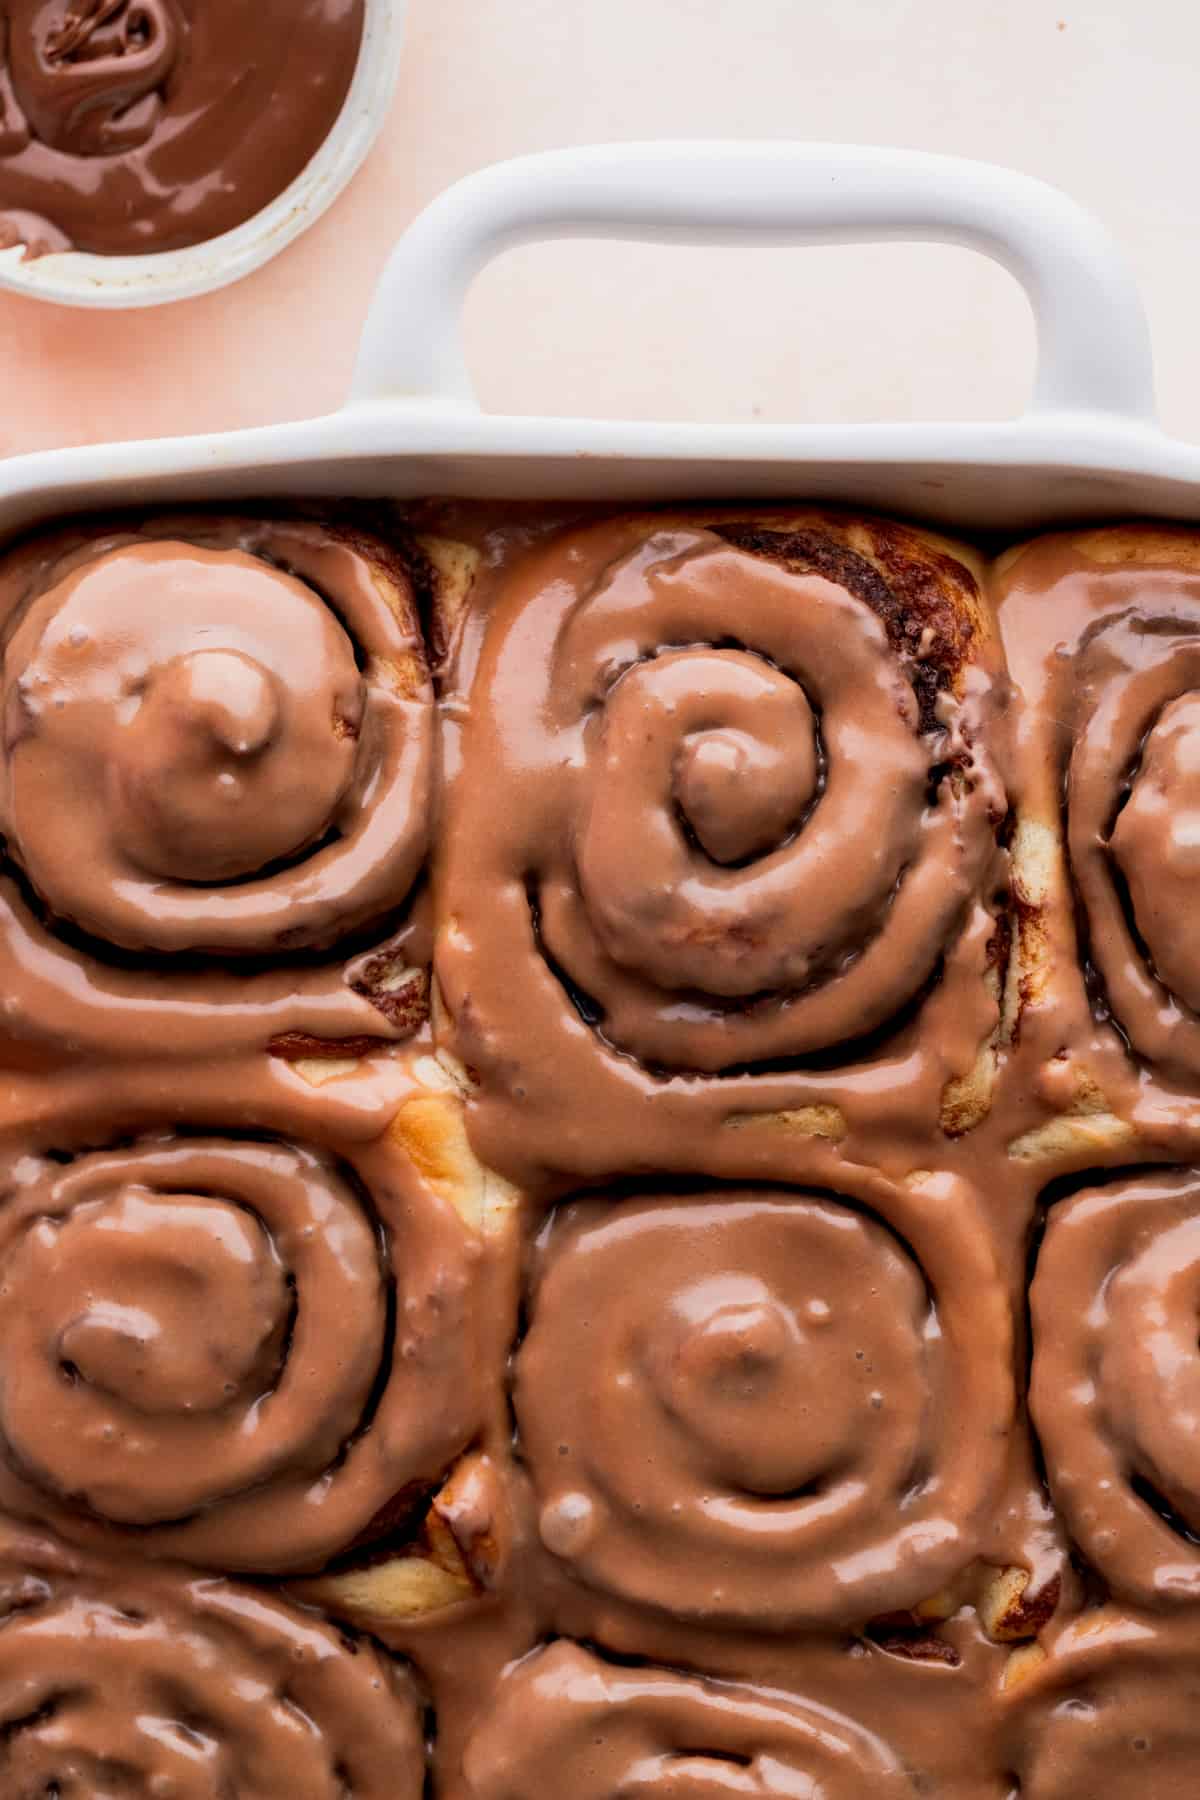 Nutella rolls in a baking pan.